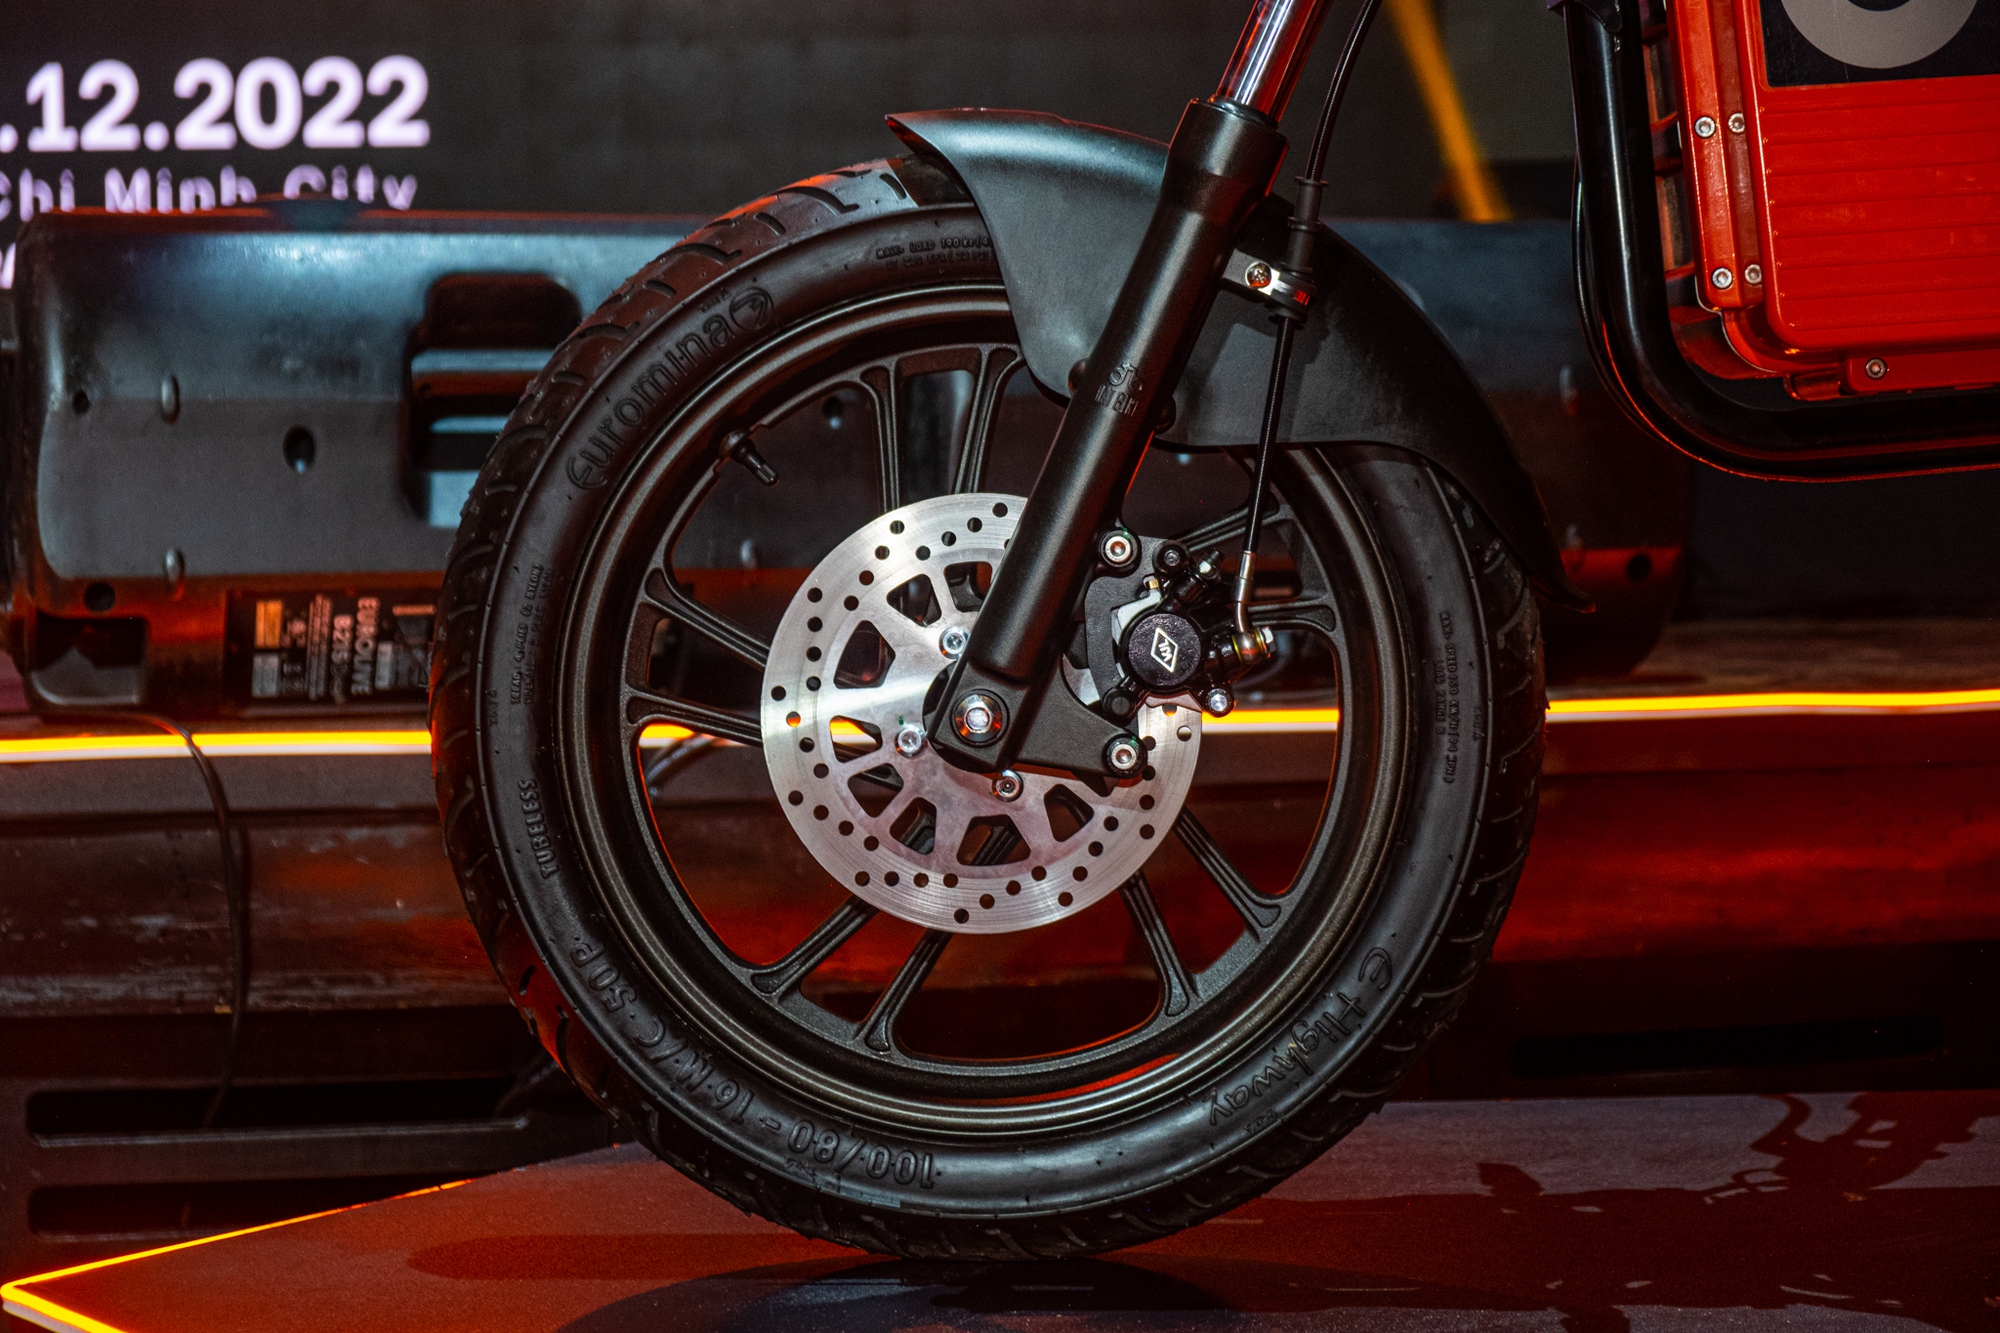 Ra mắt Dat Bike Weaver++: Giá 65,9 triệu đồng, dáng cổ điển, sạc nhanh chưa từng có tại Việt Nam - Ảnh 5.